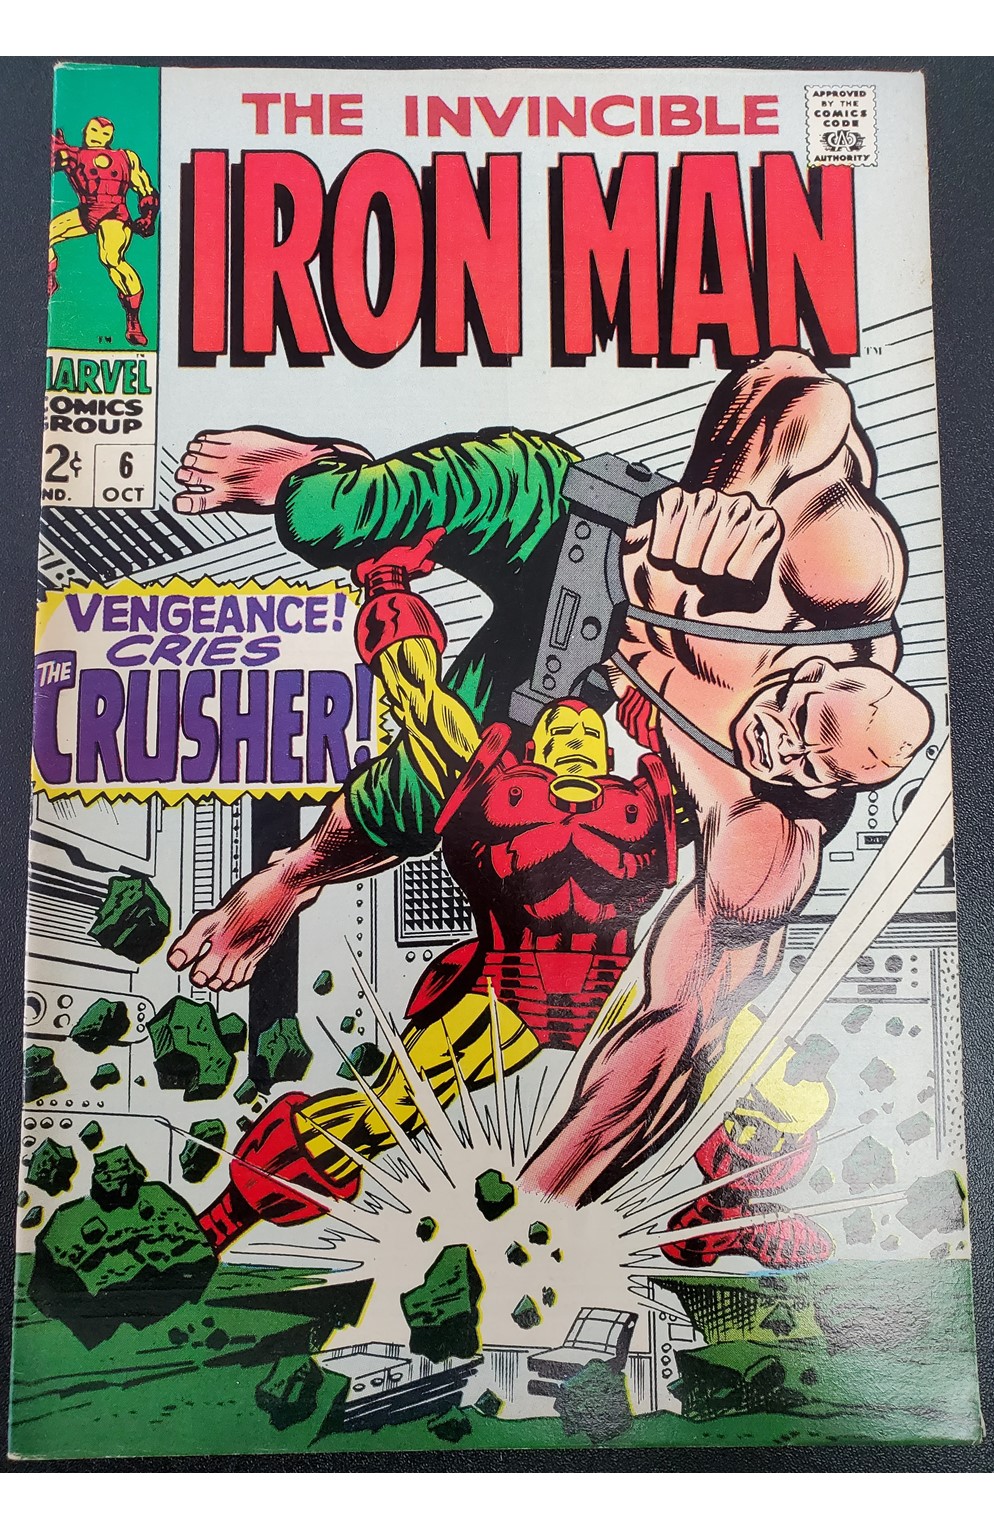 Iron Man #6 (Marvel 1968)